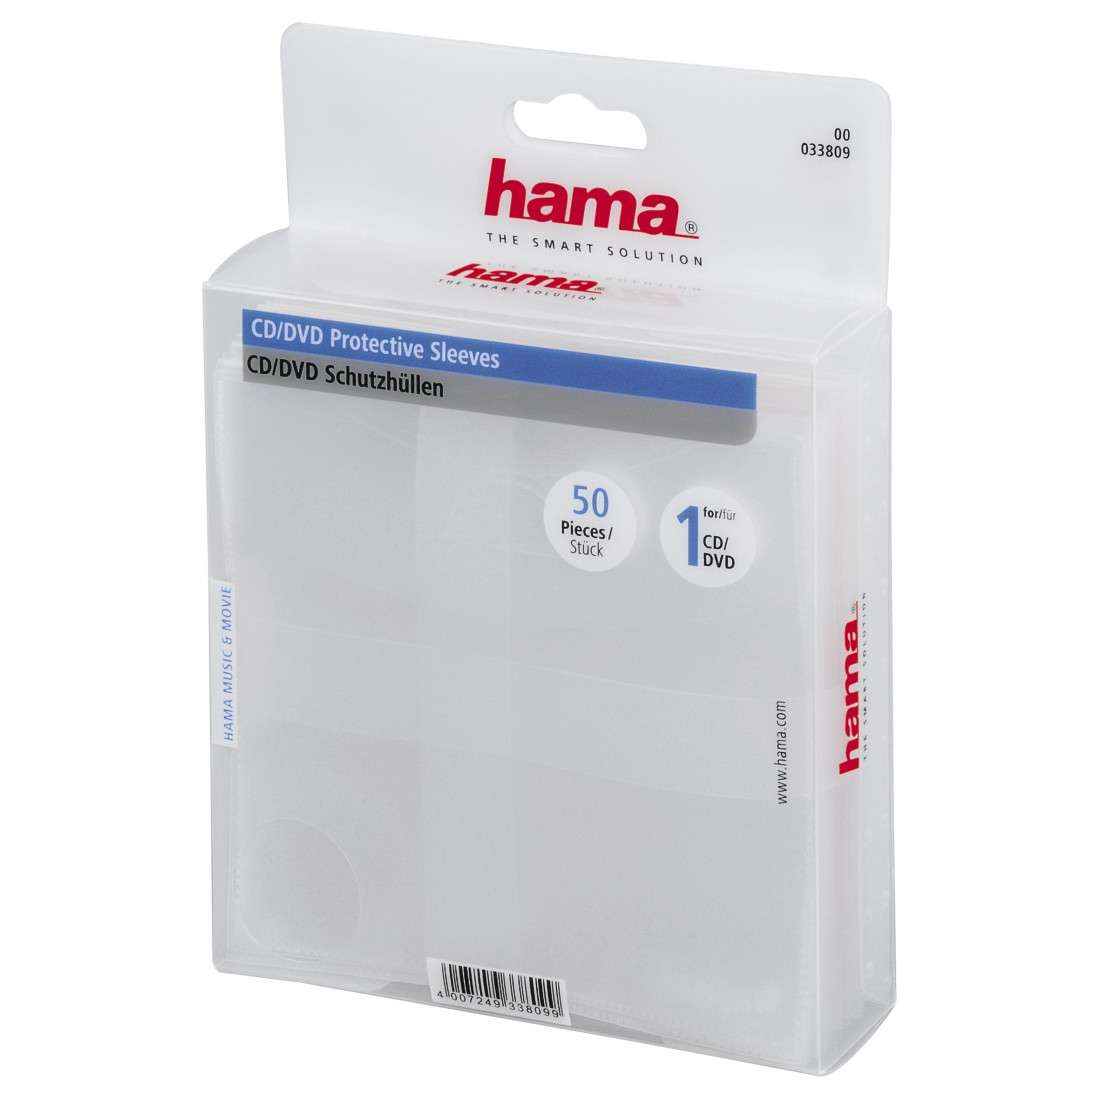 HAMA CD-/DVD-Schutzhüllen 50, Transparent